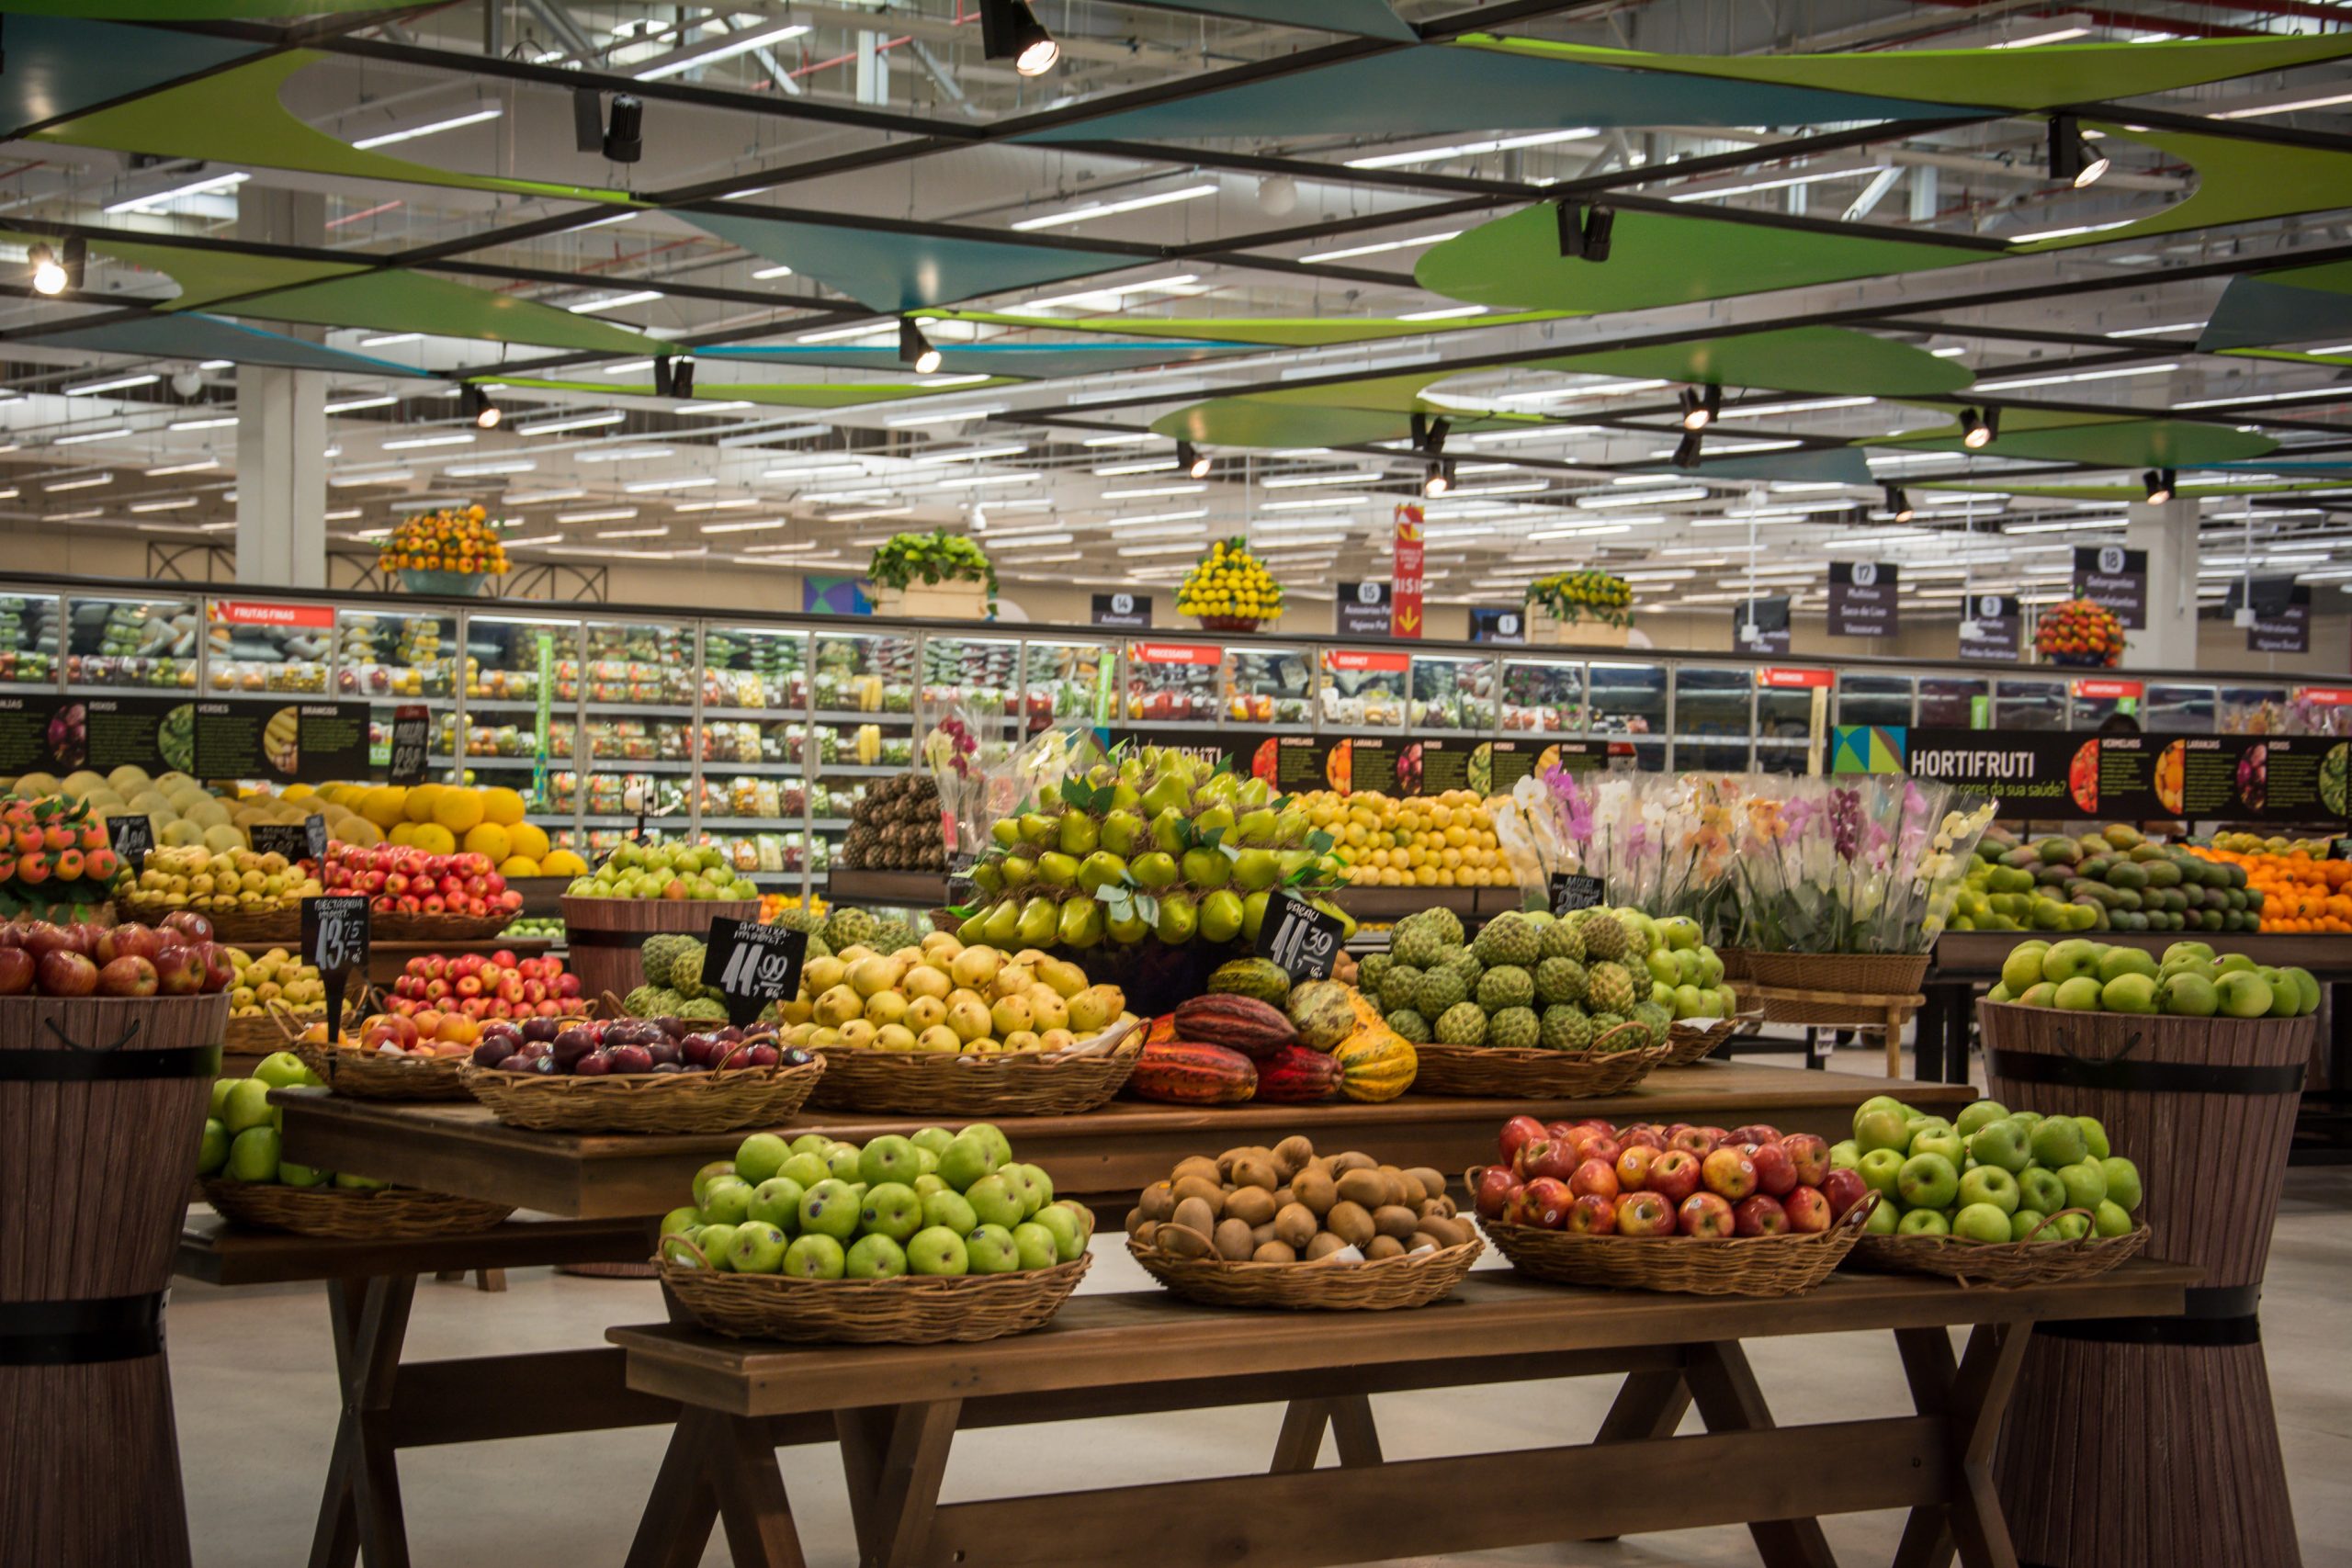 GBarbosa: foto aberta do supermercado, com diversos stands com frutas e legumes.